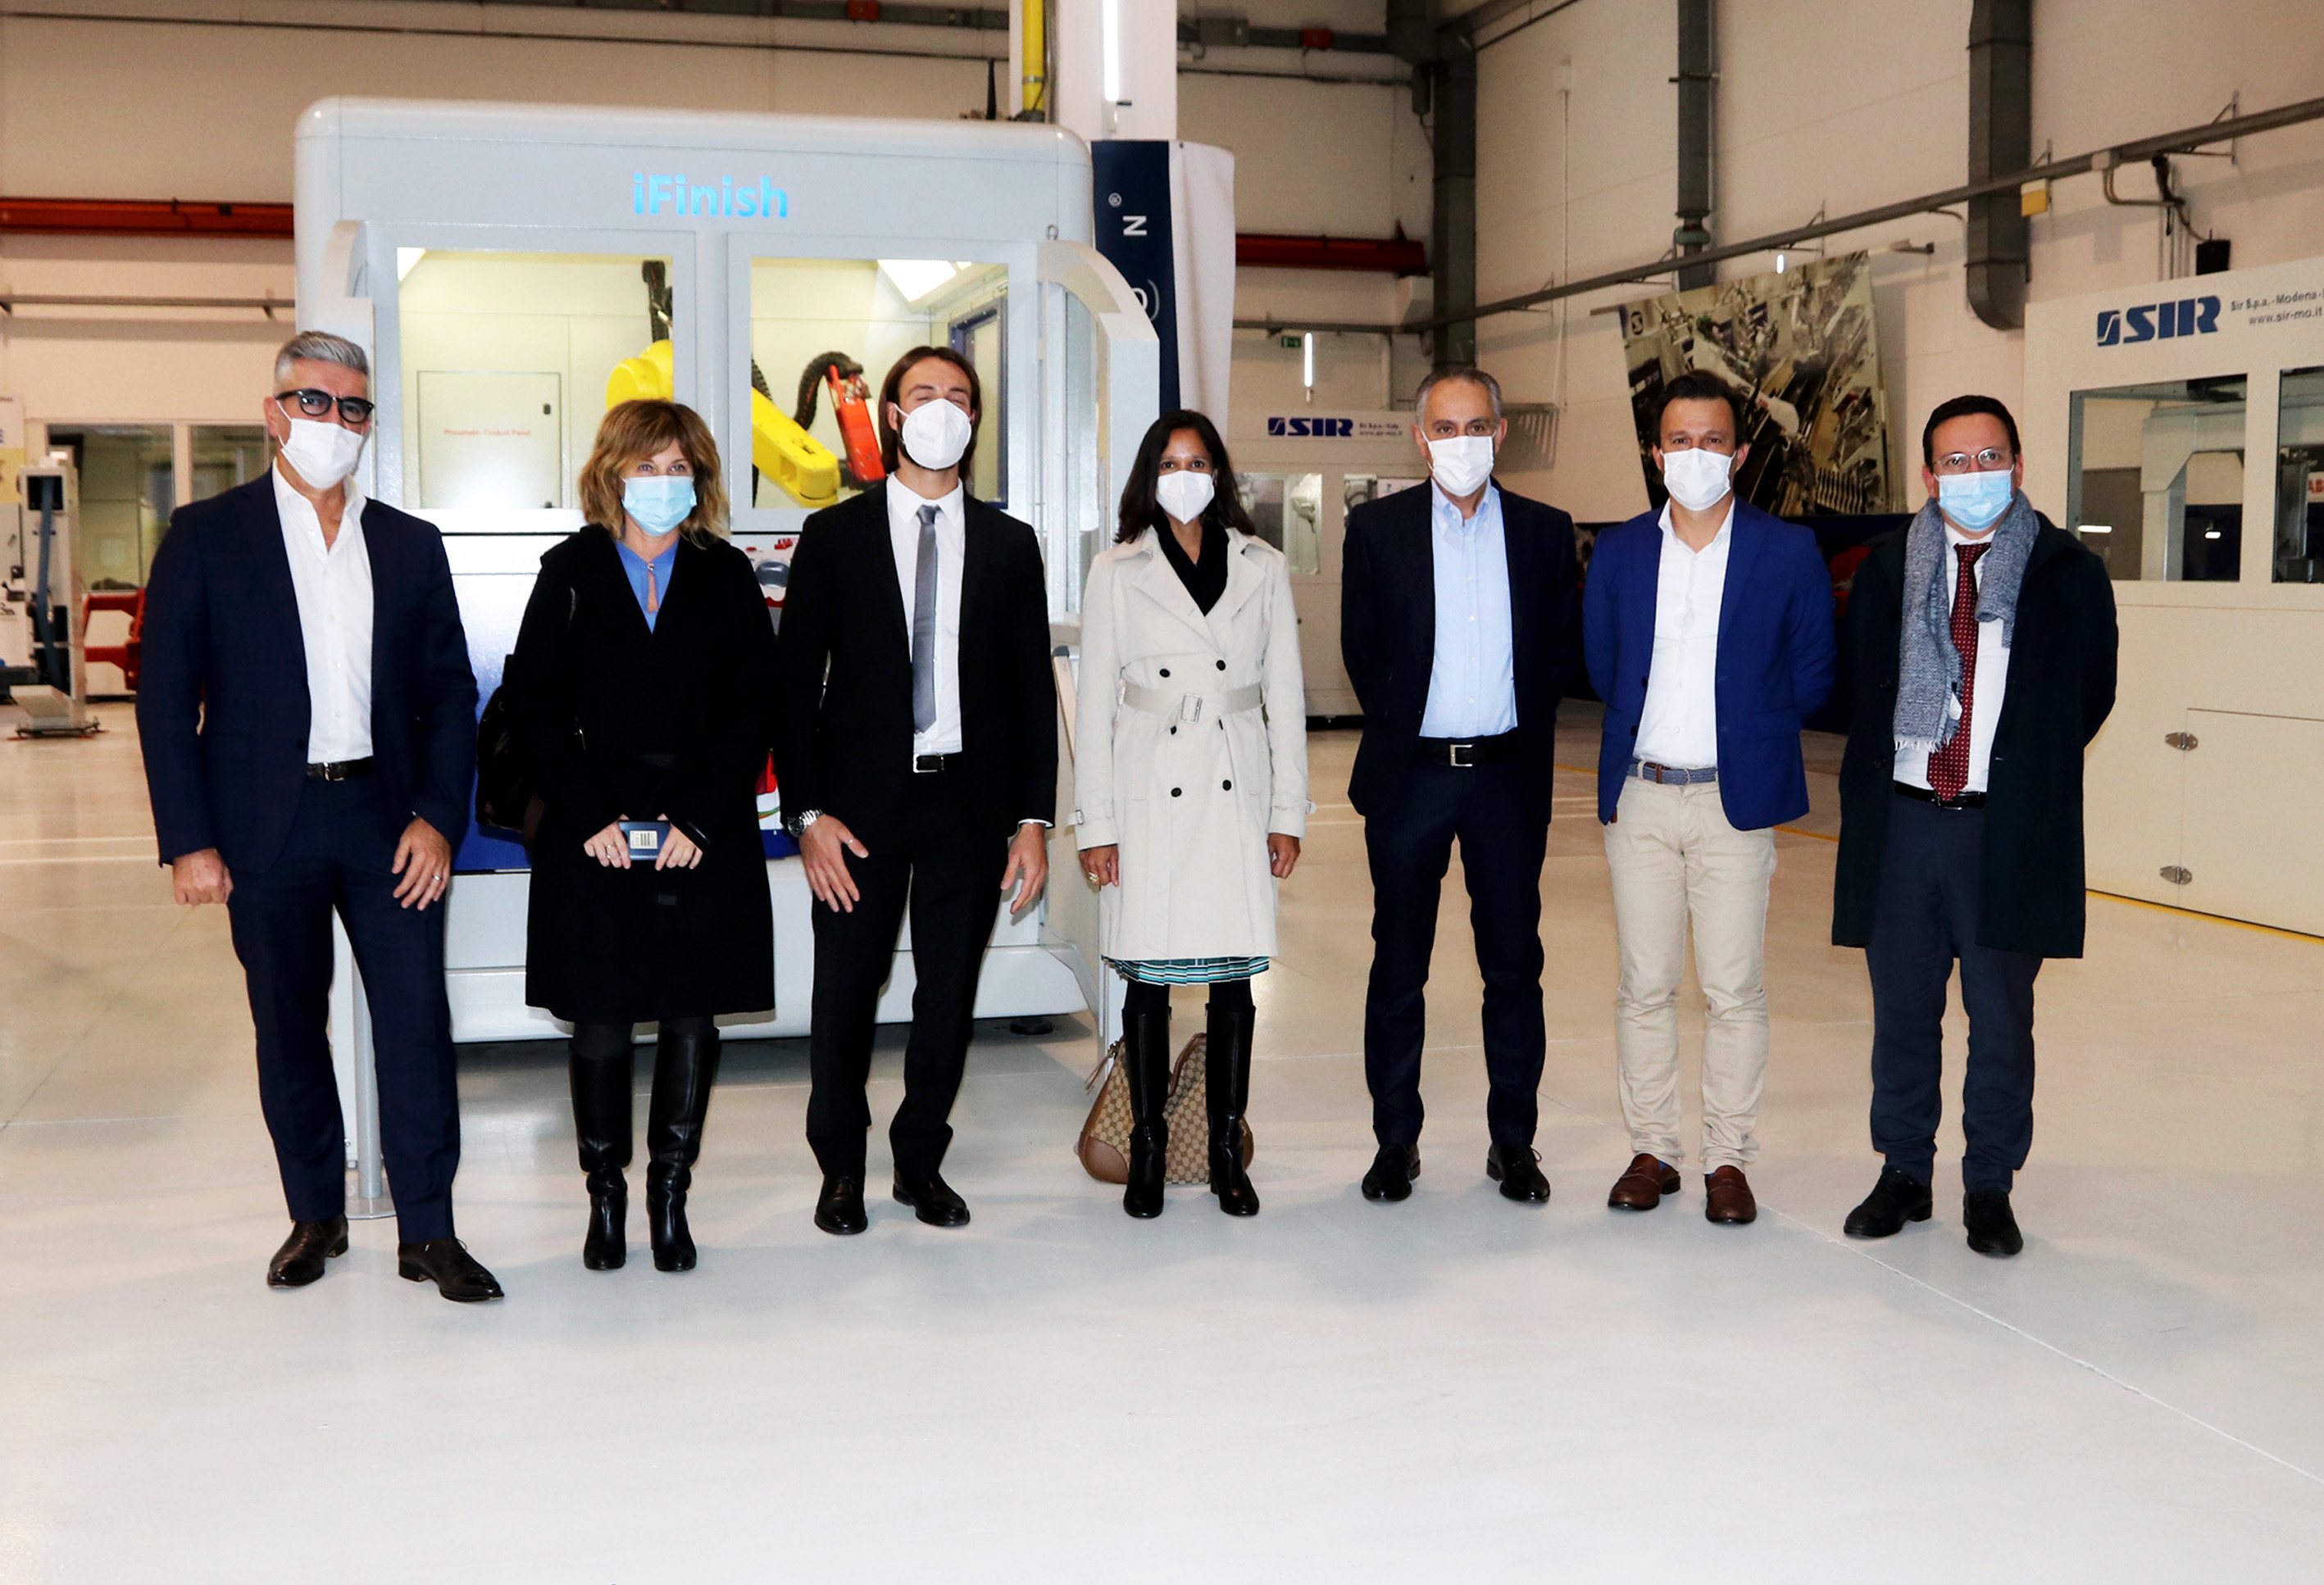 Le consul américain rend visite à Sir Robotics Modena